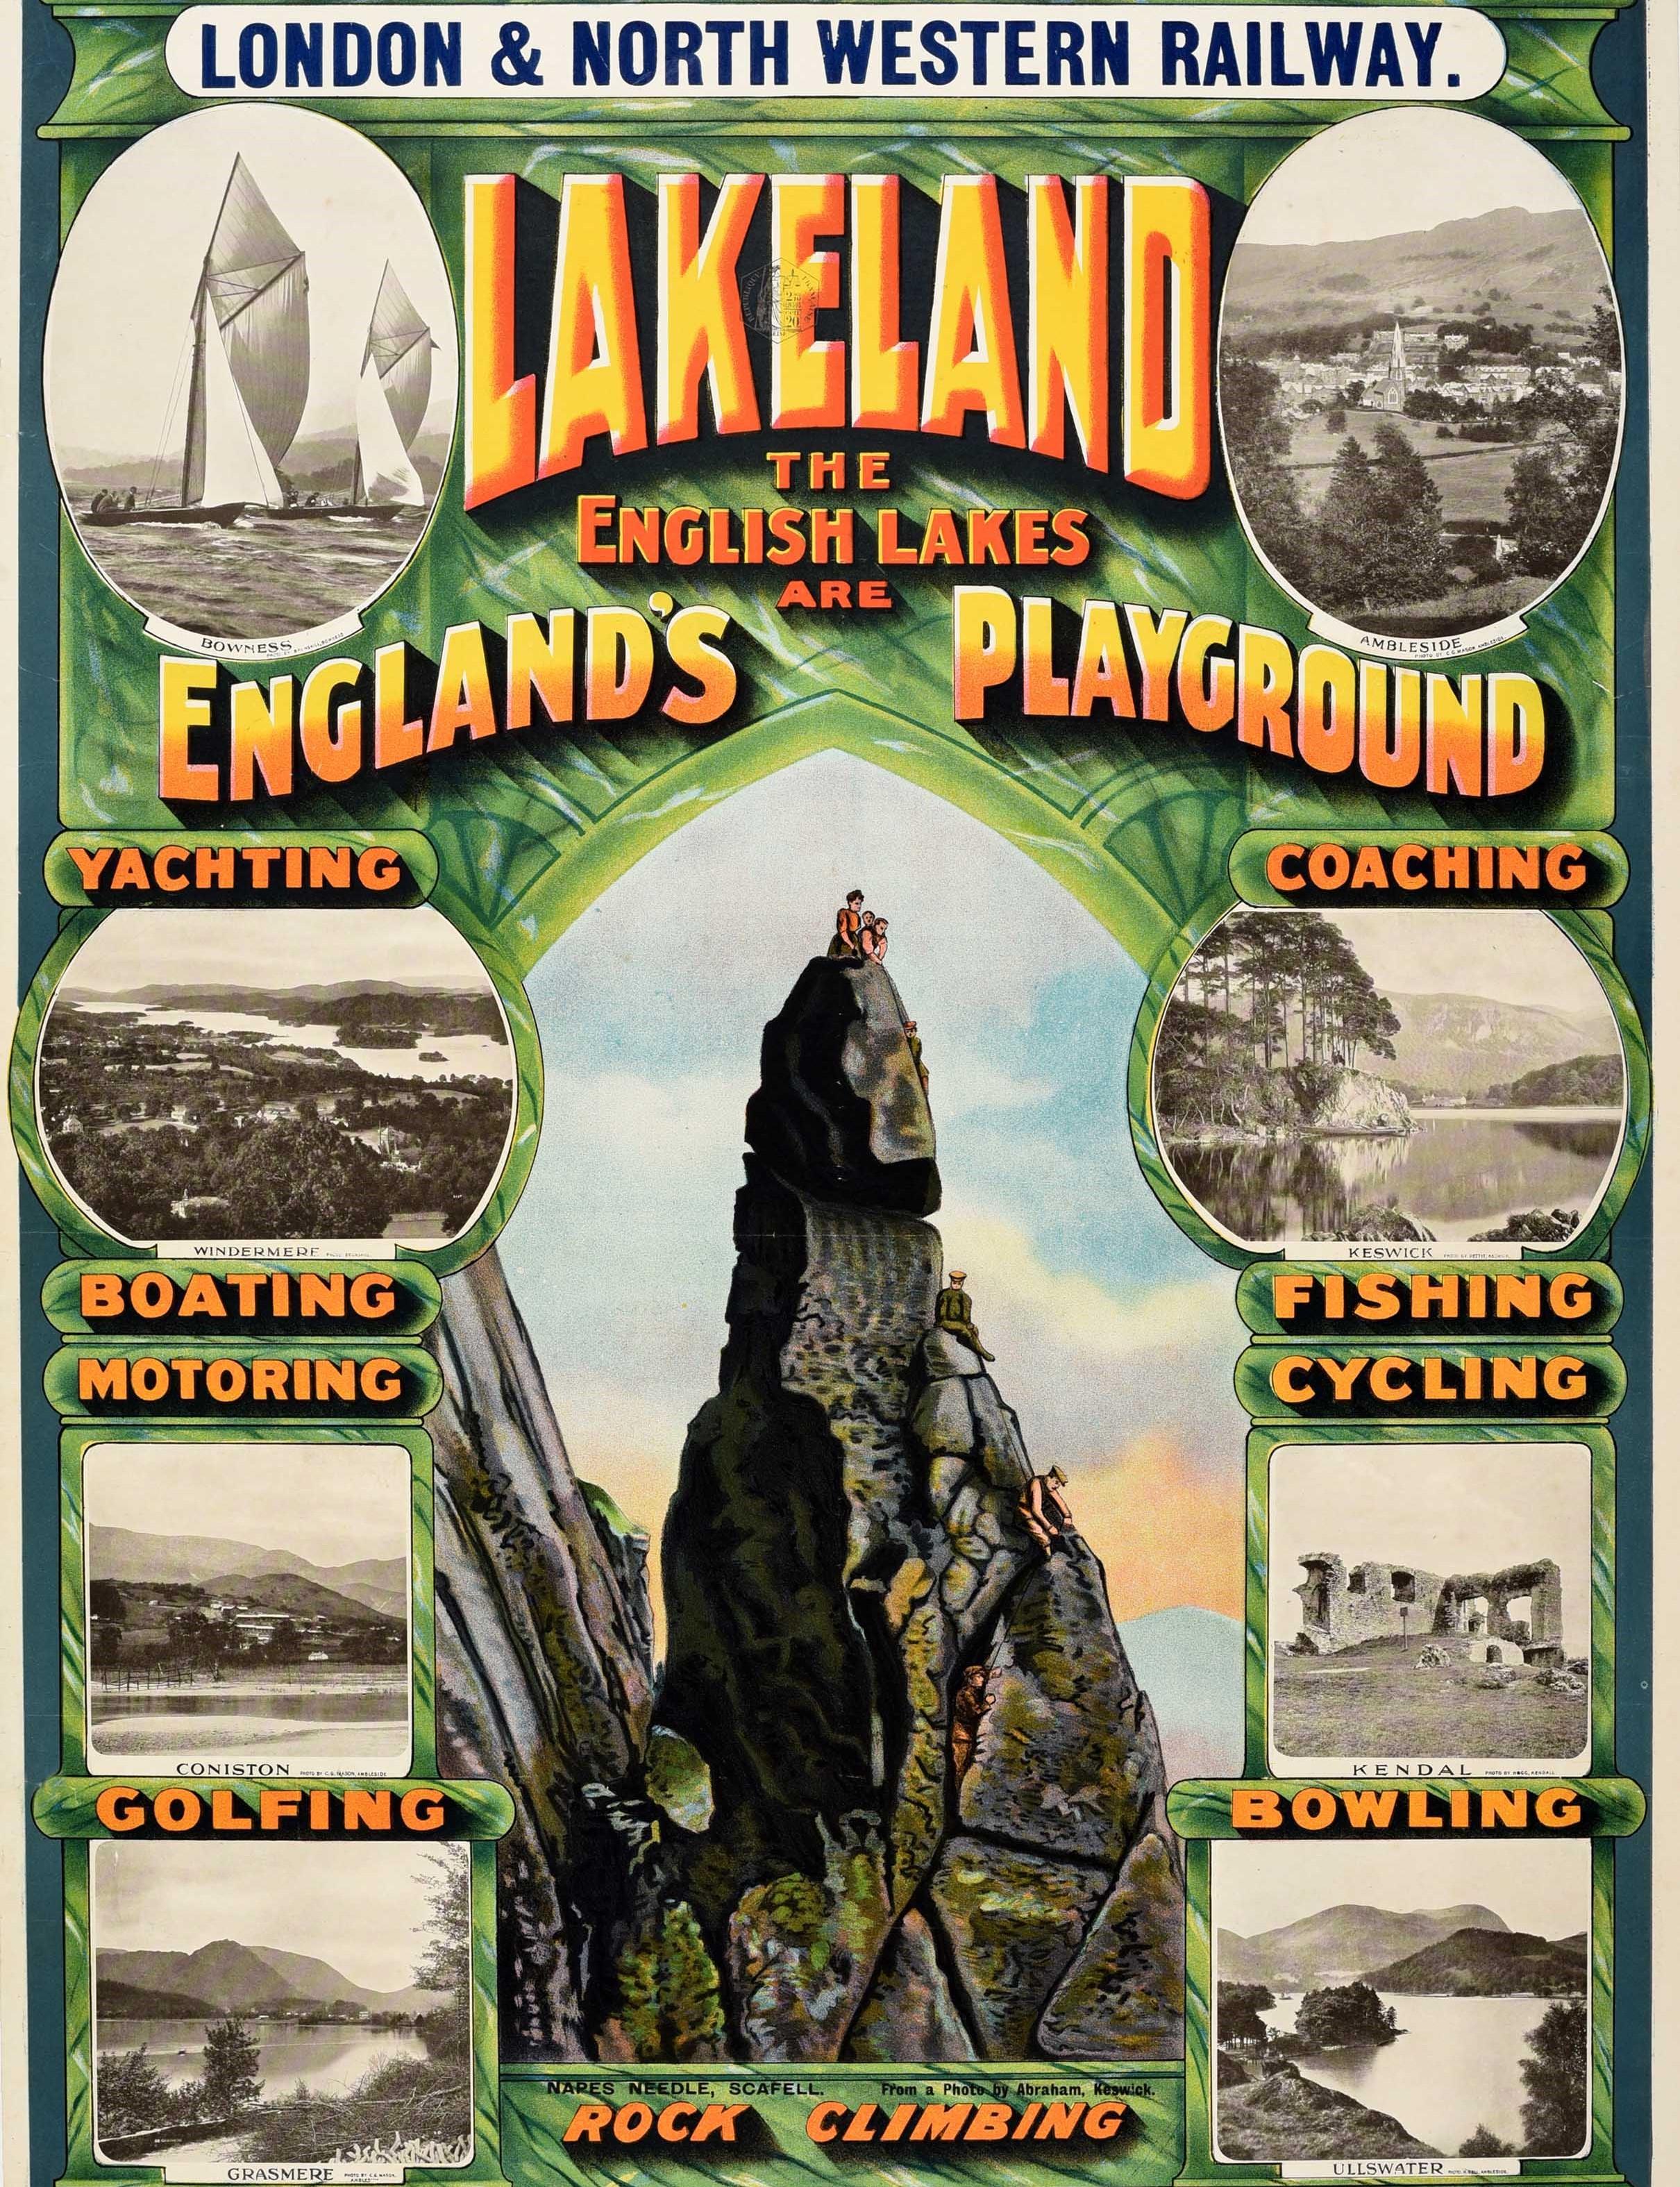 Original antikes London & North Western Railway Reiseplakat - Lakeland The English Lakes are England's Playground - mit Schwarz-Weiß-Bild der landschaftlichen Ansichten und der angebotenen Aktivitäten im Lake District, einschließlich Segeln und